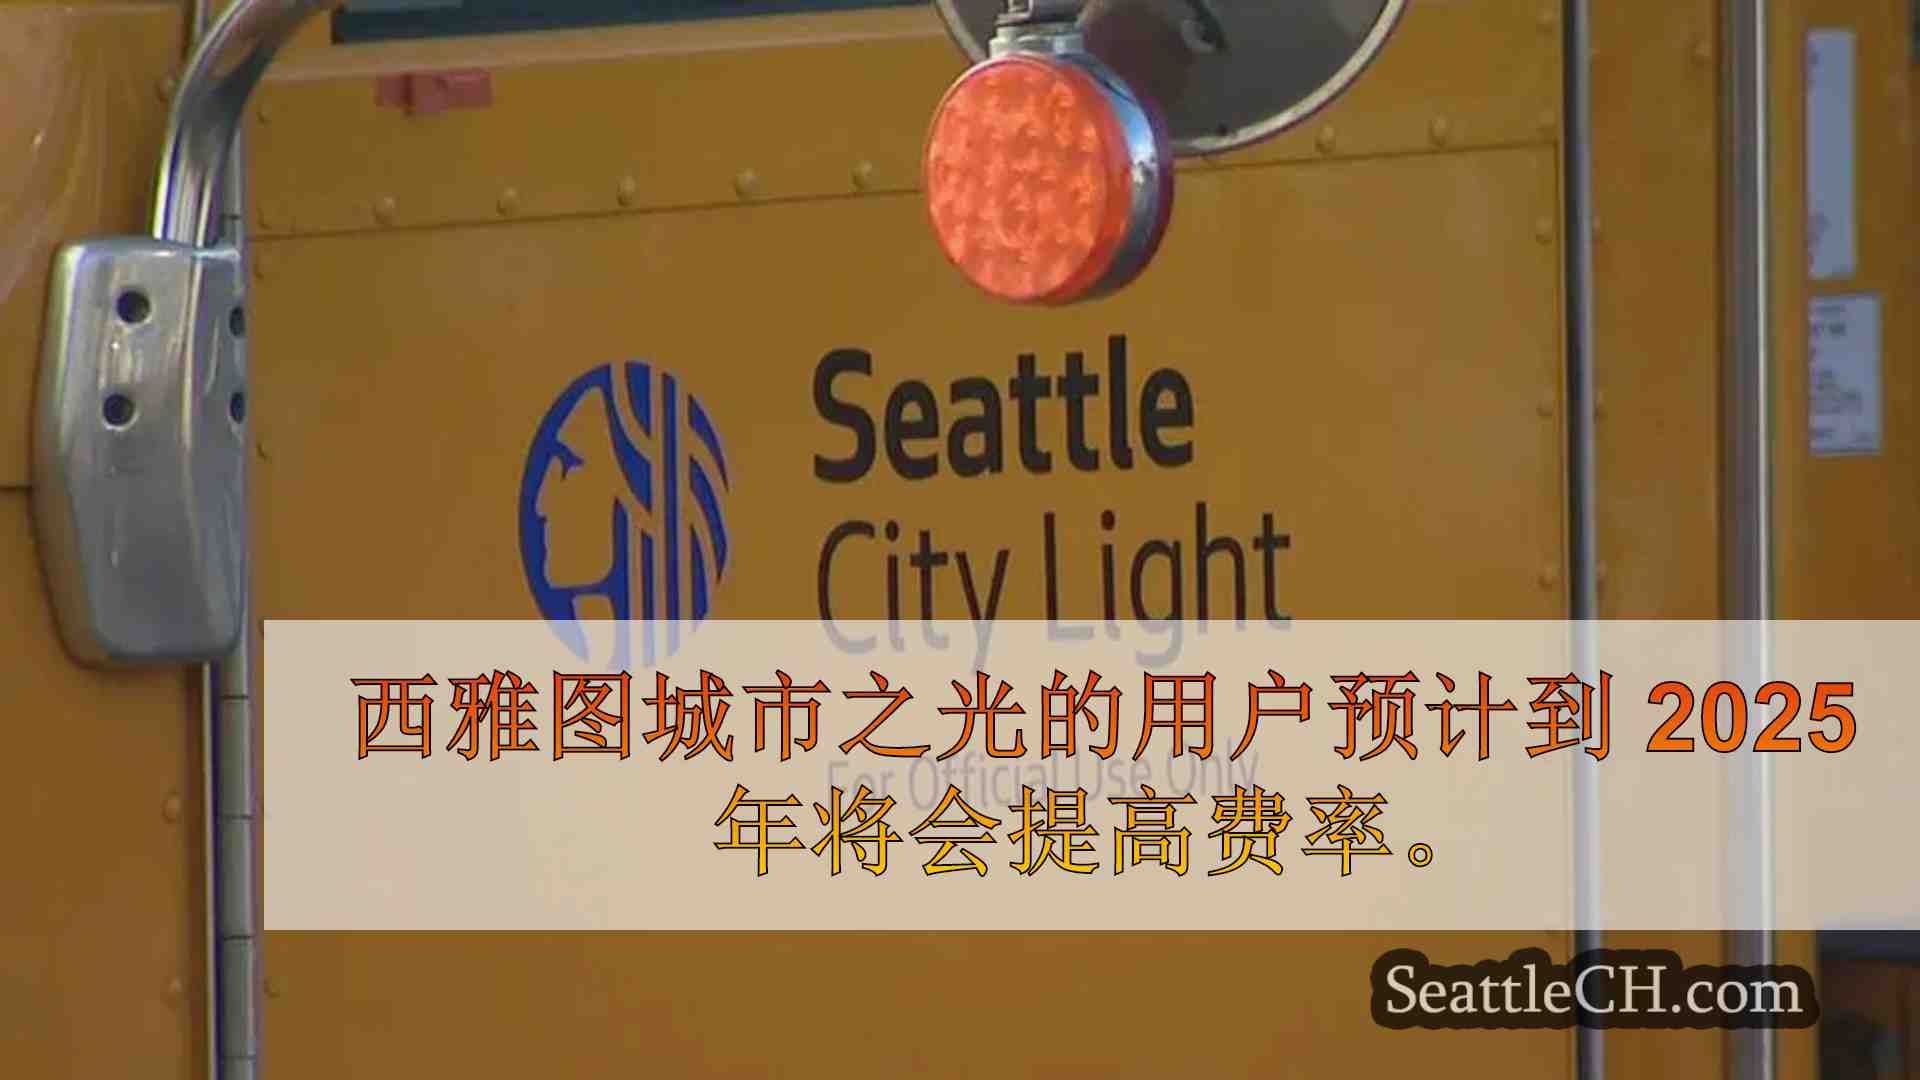 西雅图城市照明公司计划在 2025 年将利率上调